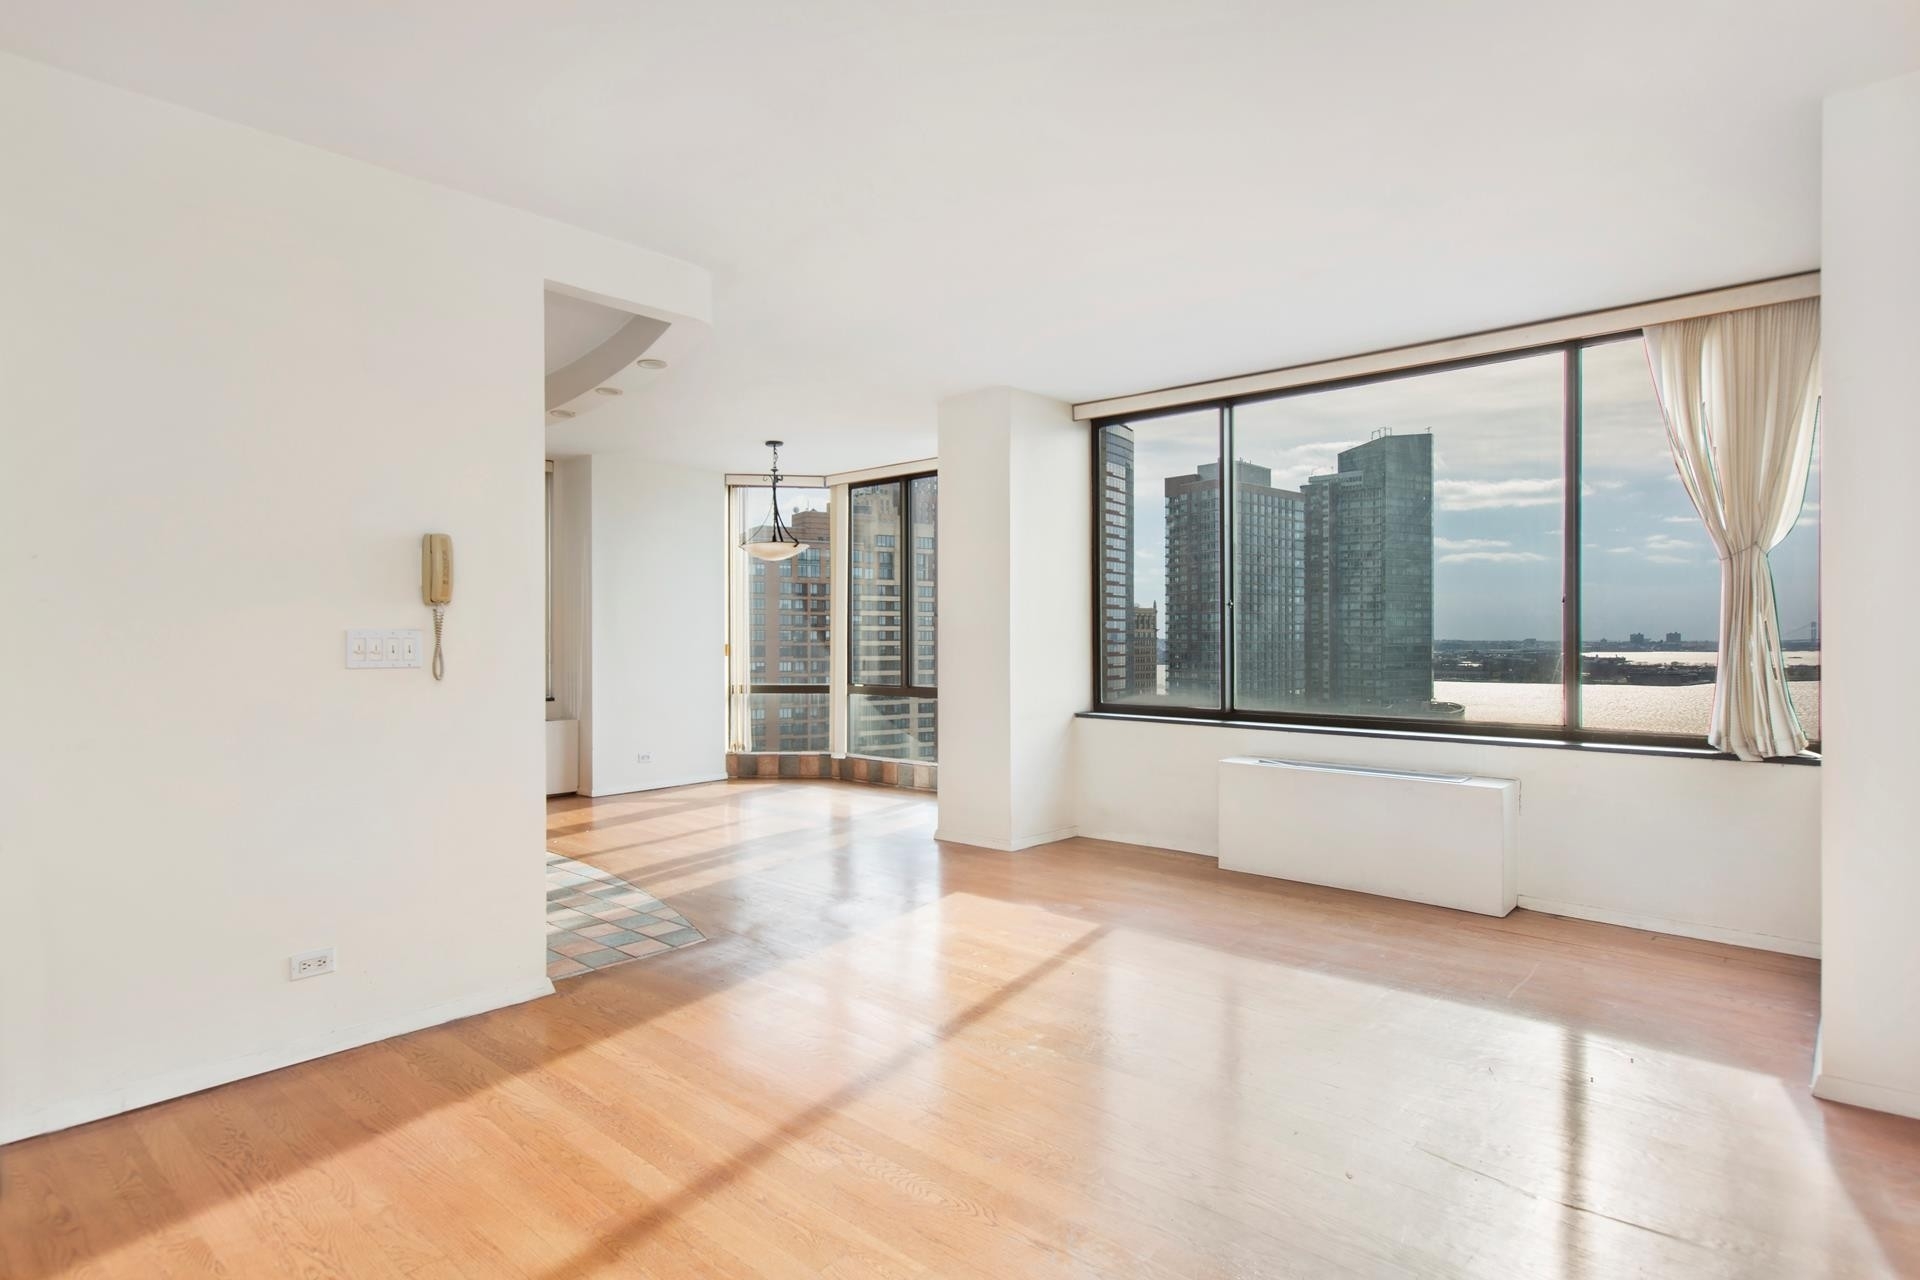 Condominium at Liberty Terrace, 380 RECTOR PL , 23G New York